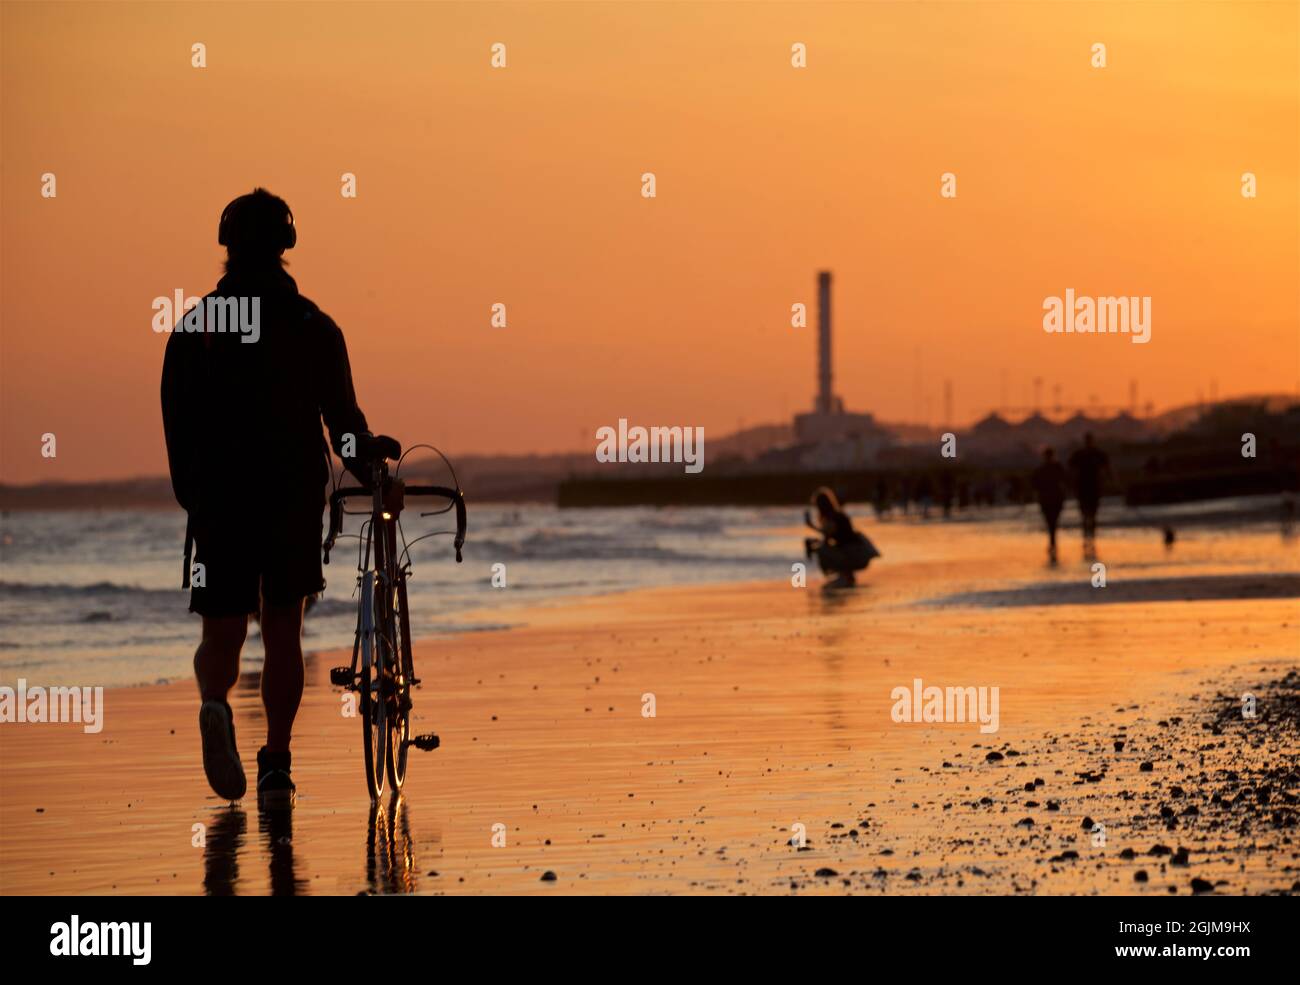 Brighton et la plage de Hove à marée basse. Silhouettes de personnes marchant le long de la plage de sable au coucher du soleil. East Sussex, Angleterre. Shoreham Power Station au loin Banque D'Images